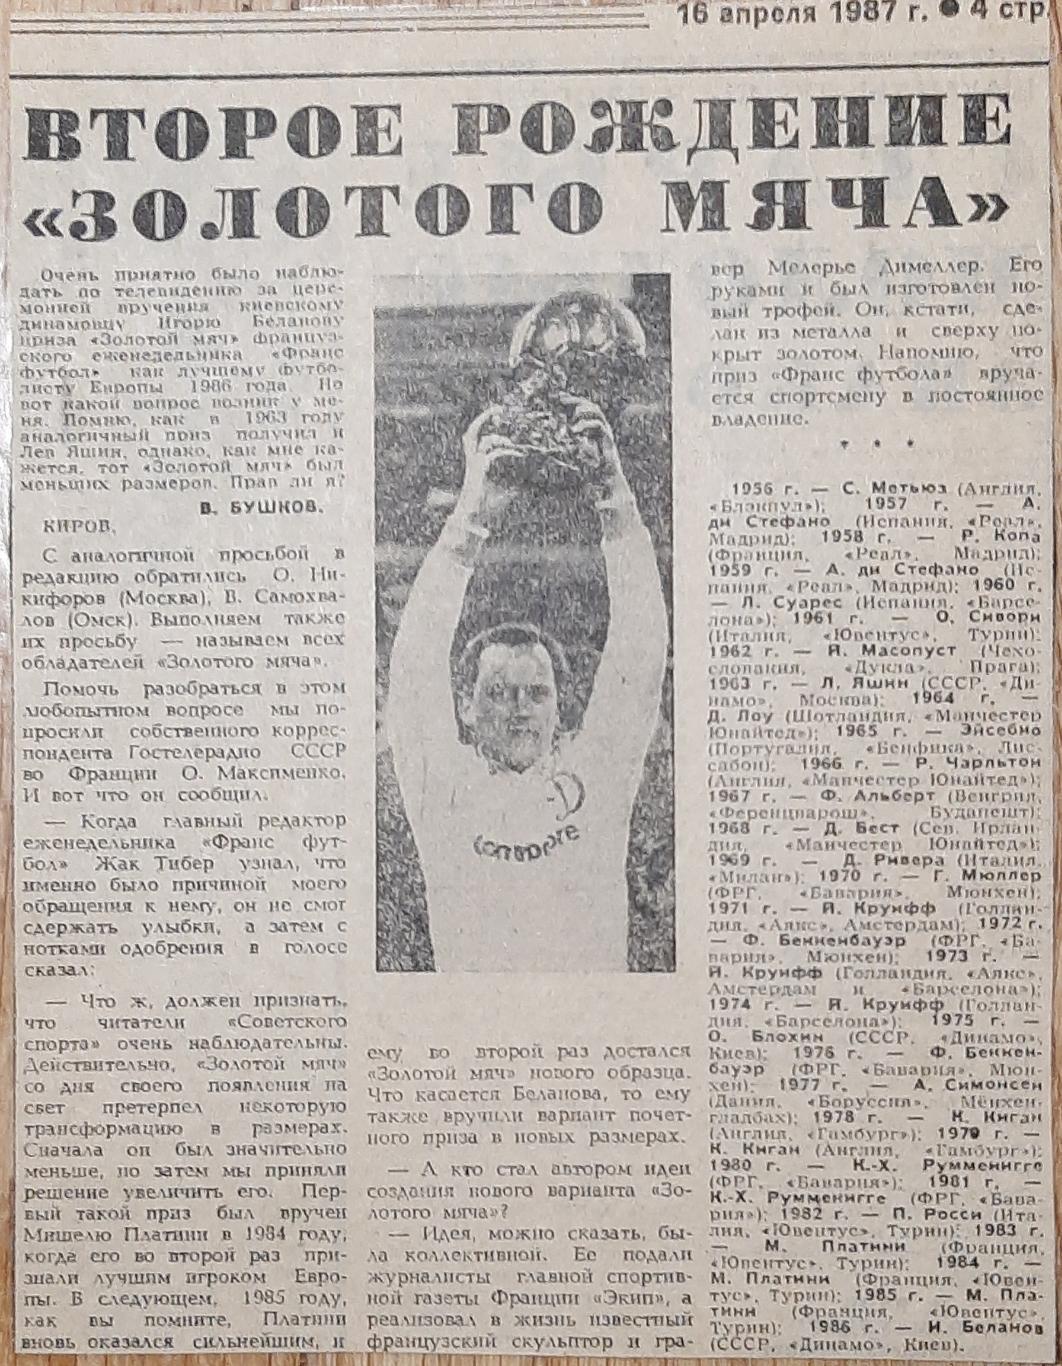 Вирізка з газети Советский спорт (18.04 1987)